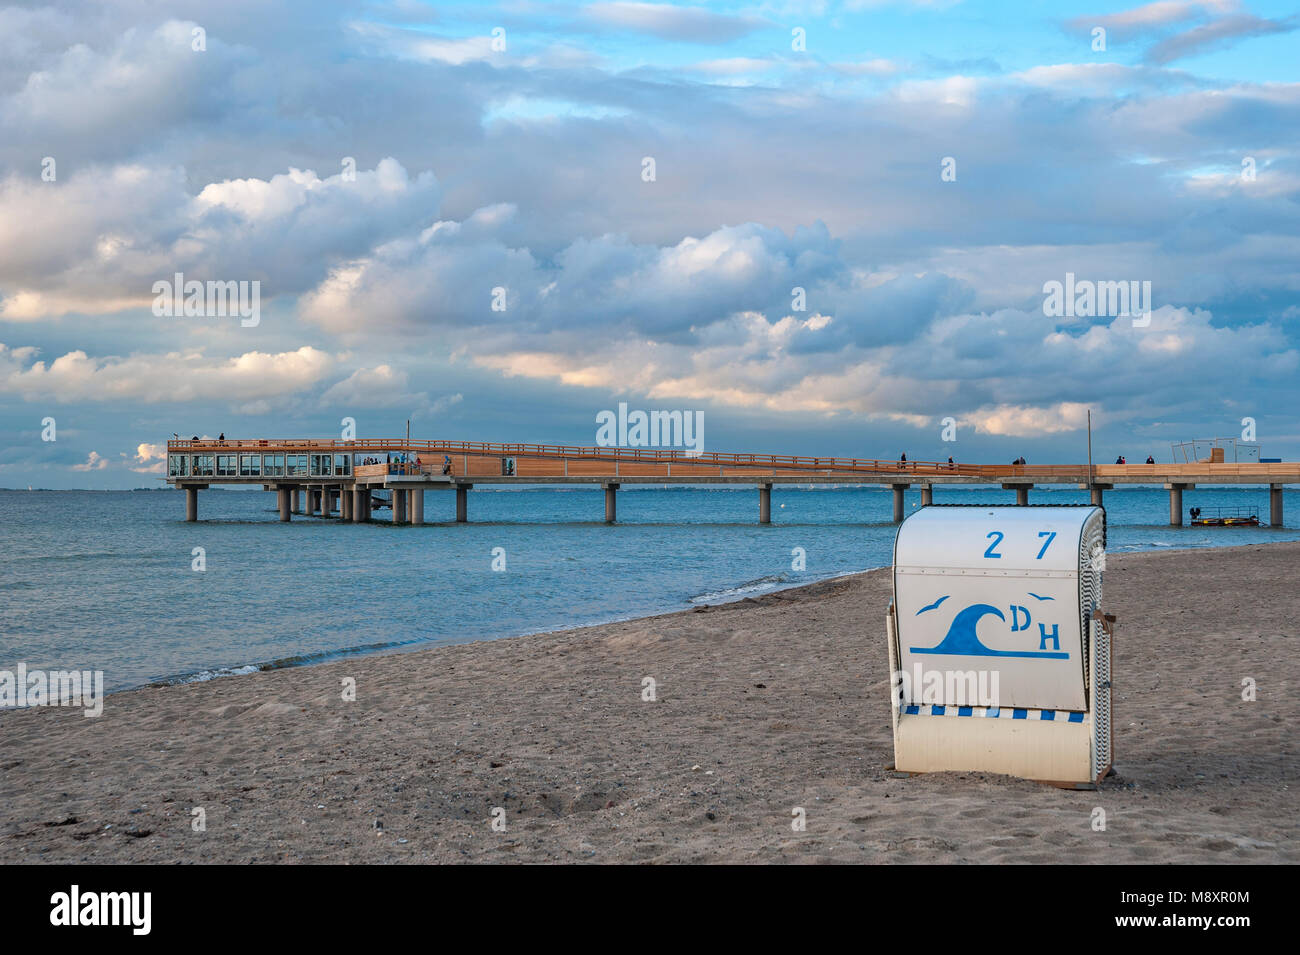 Beach with pier, Heiligenhafen, Baltic Sea, Schleswig-Holstein, Germany, Europe Stock Photo